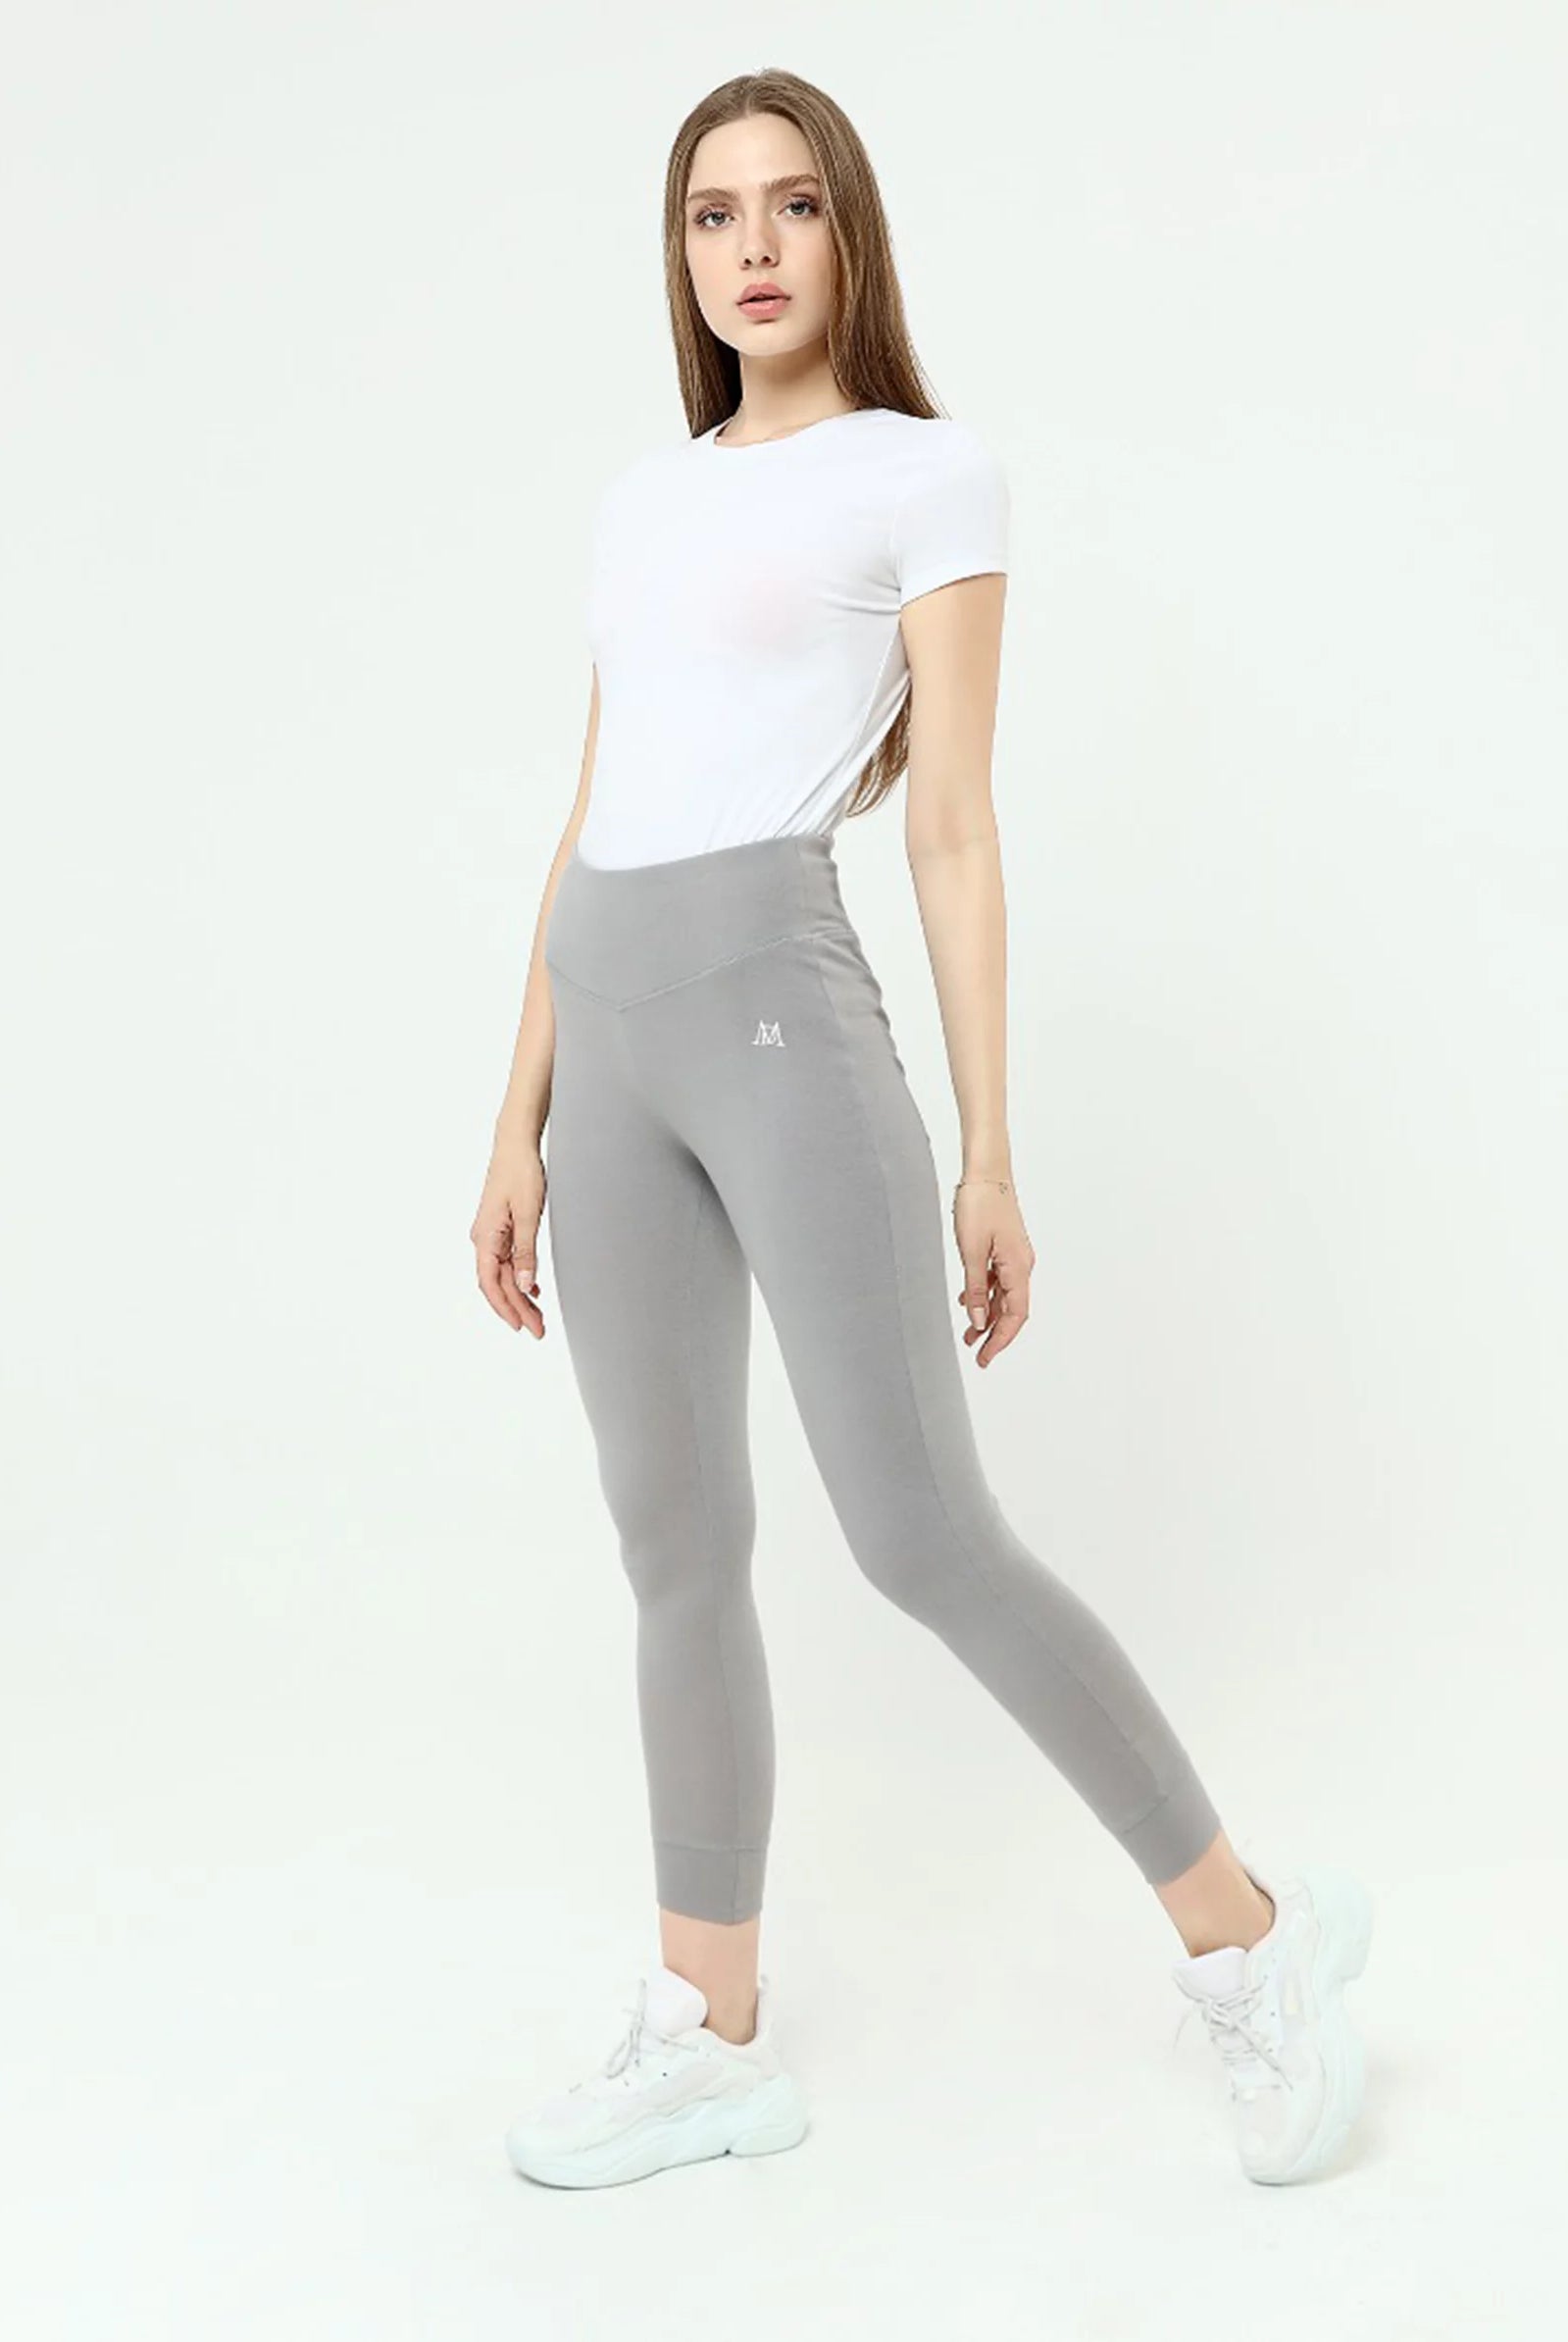 grey leggings women online